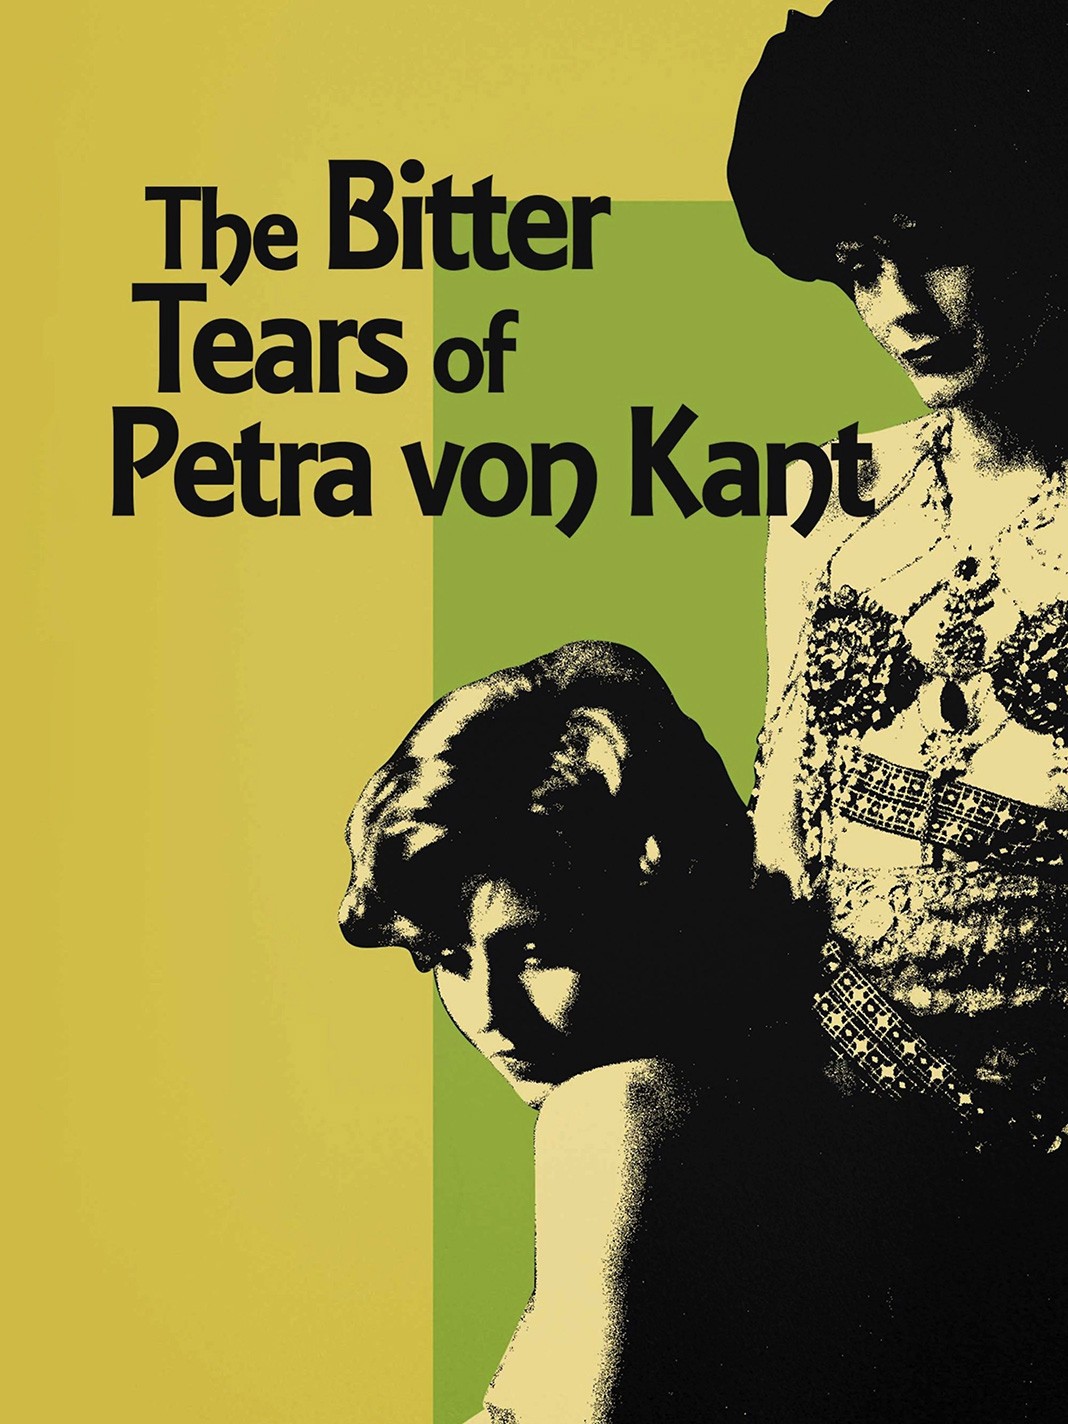 Афиша из фильма «Горькие слезы Петры фон Кант», 1972 г.